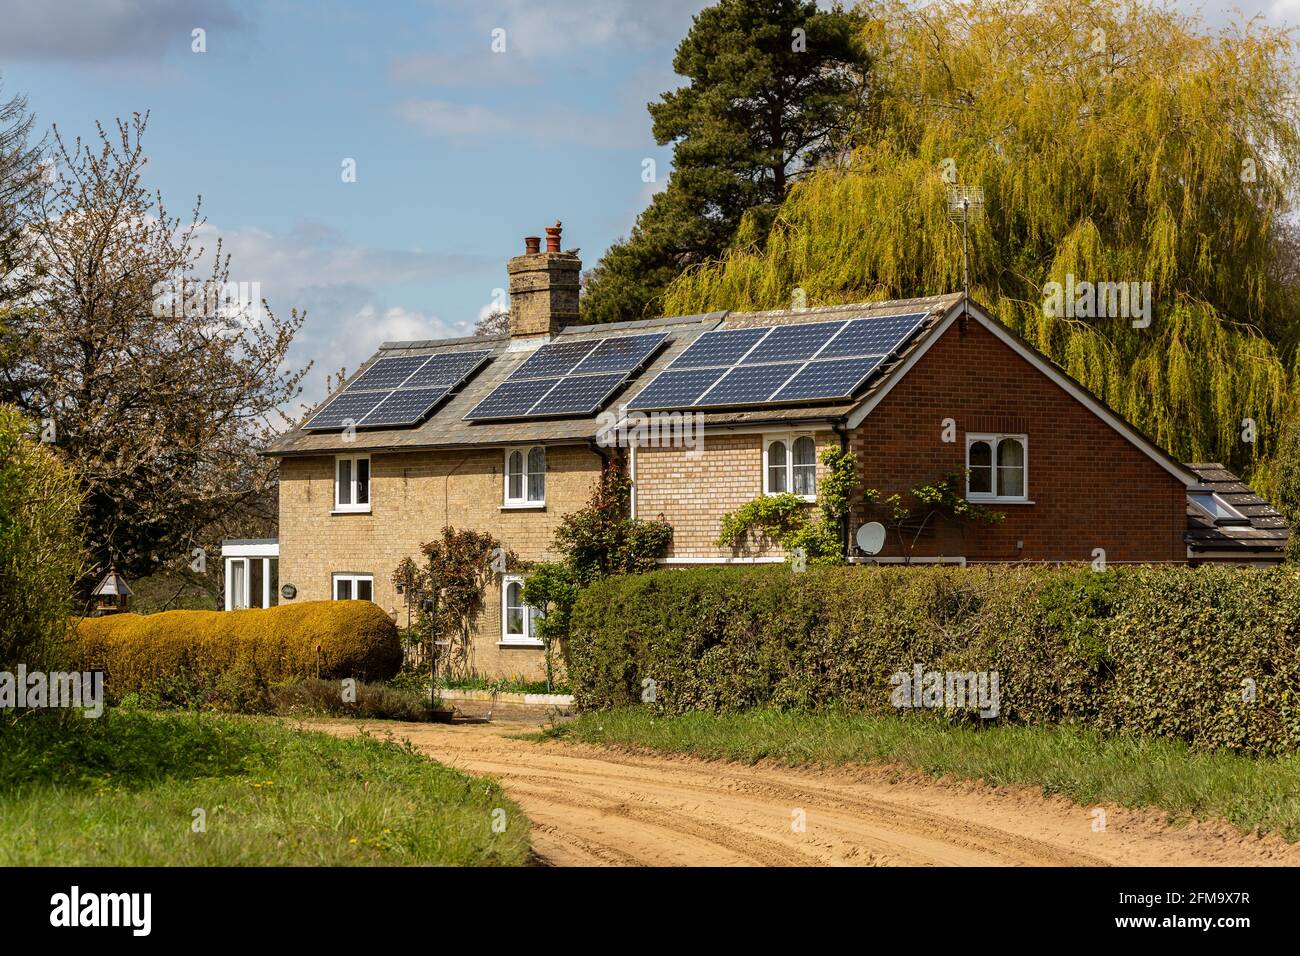 Woodbridge, Suffolk, Großbritannien Mai 01 2021: Ein Landhaus, in dem Solarzellen auf dem Dach installiert wurden, um saubere grüne erneuerbare Energie zu erzeugen Stockfoto